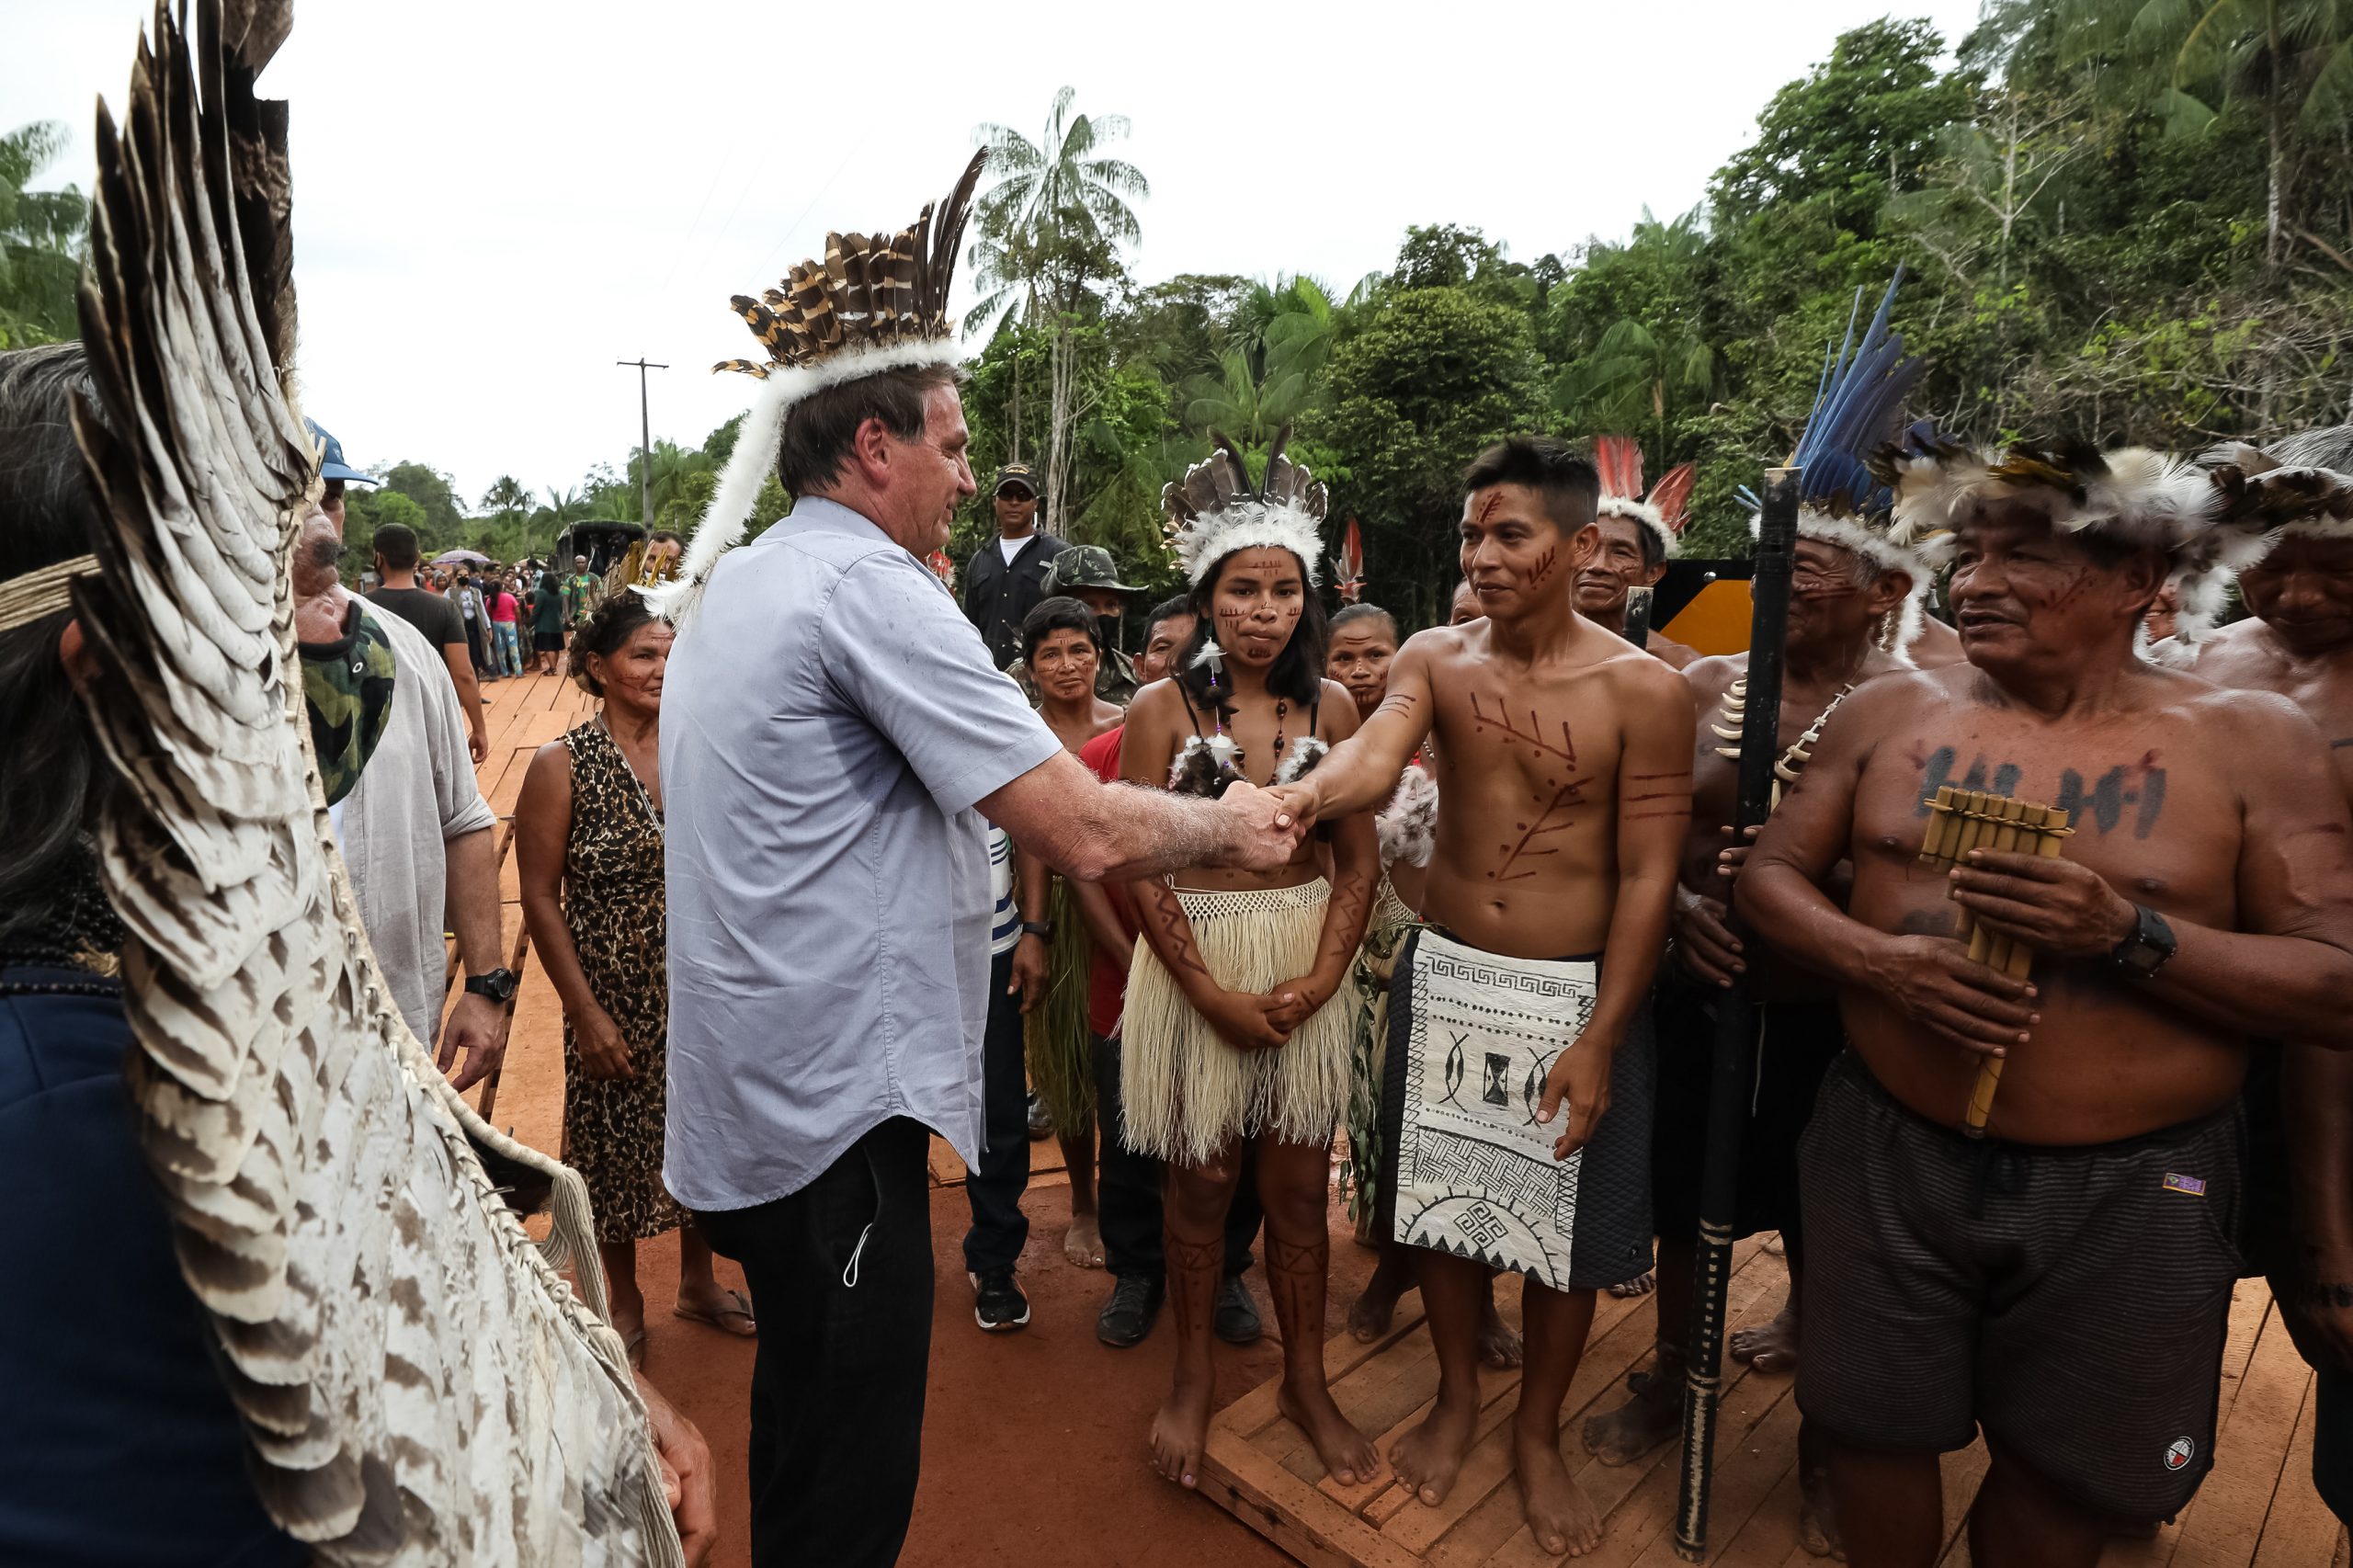 Sob clima de festa, indígenas recebem Bolsonaro com euforia e muitas fotos 19